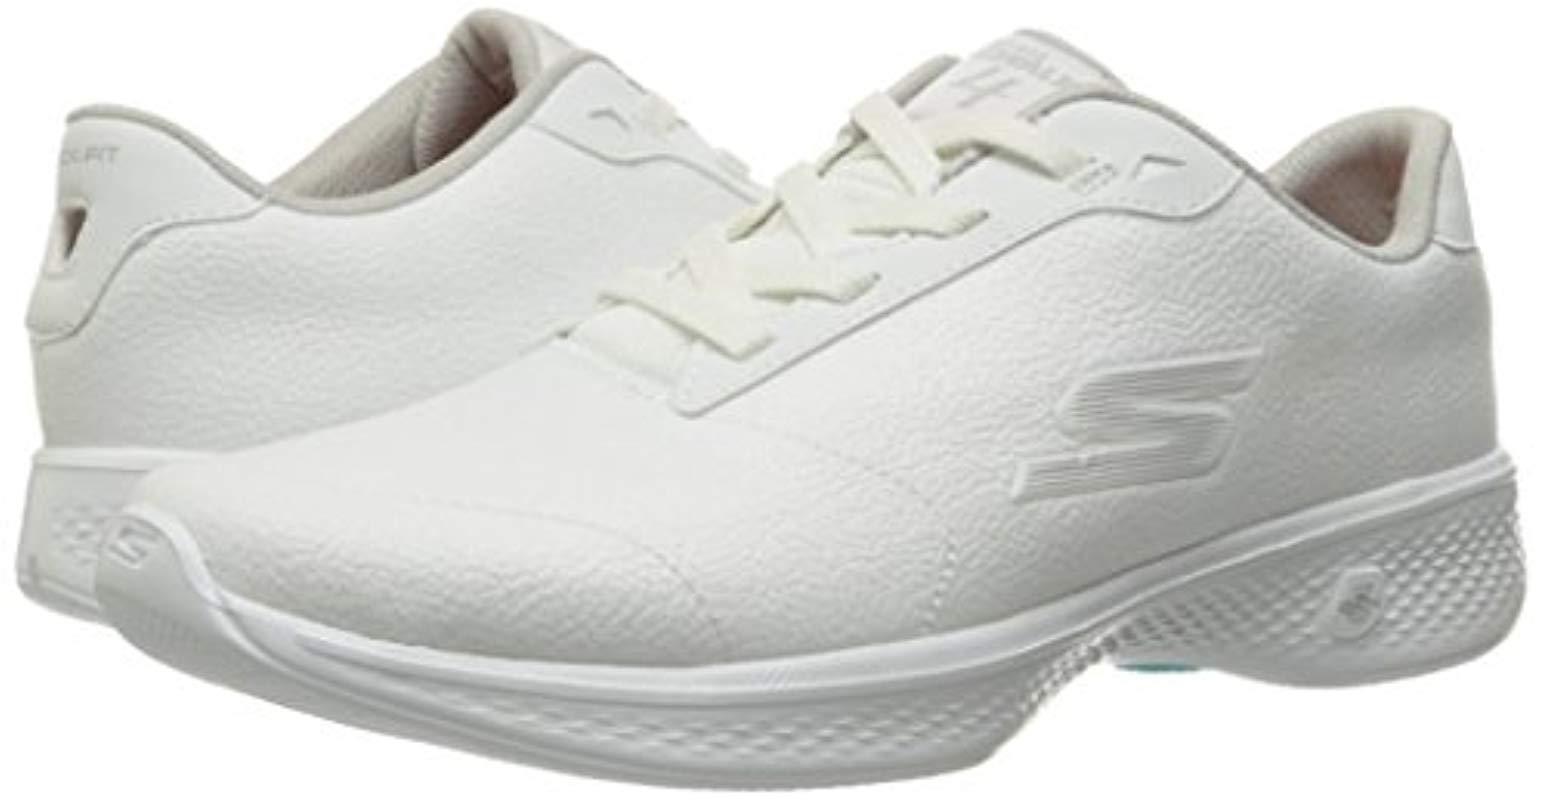 Skechers Leather Performance Go Walk 4 Premier Walking Shoe in White | Lyst